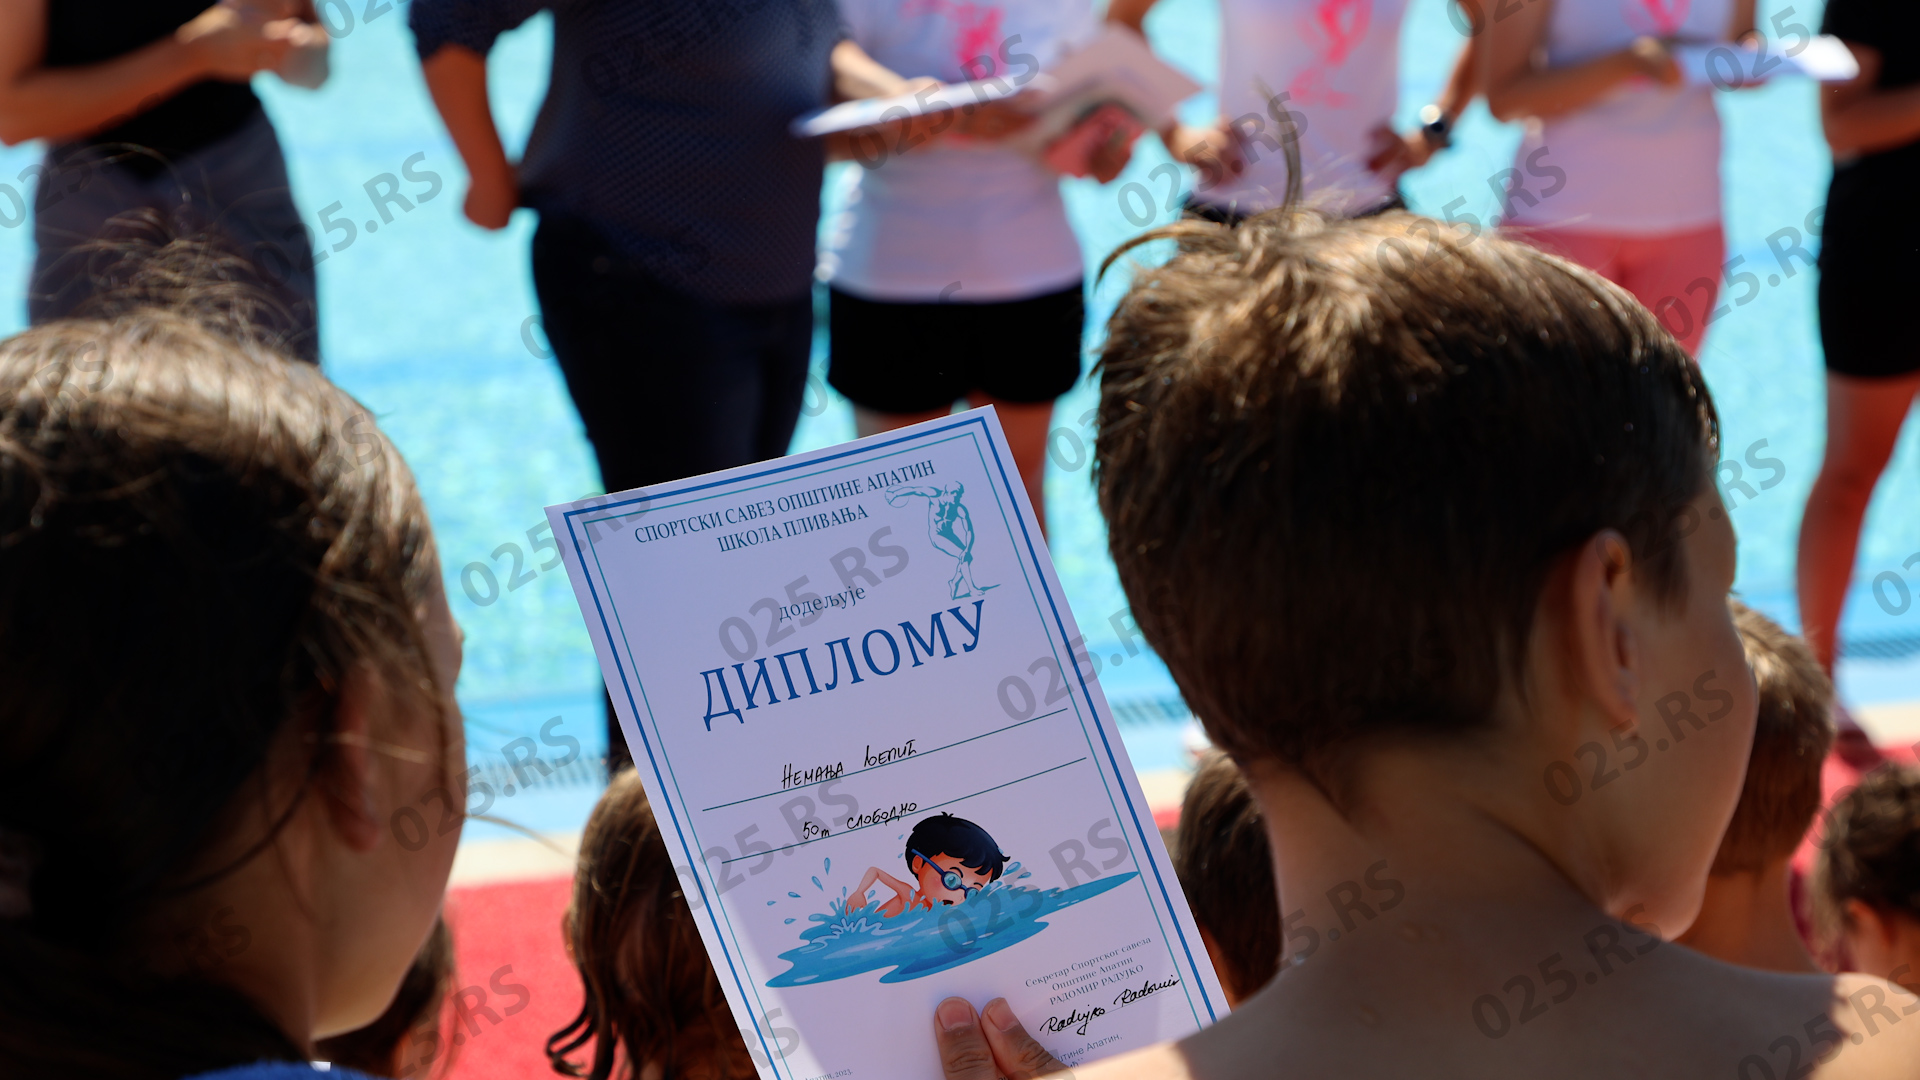 škola plivanja na bazenima “Junaković”-apatin 